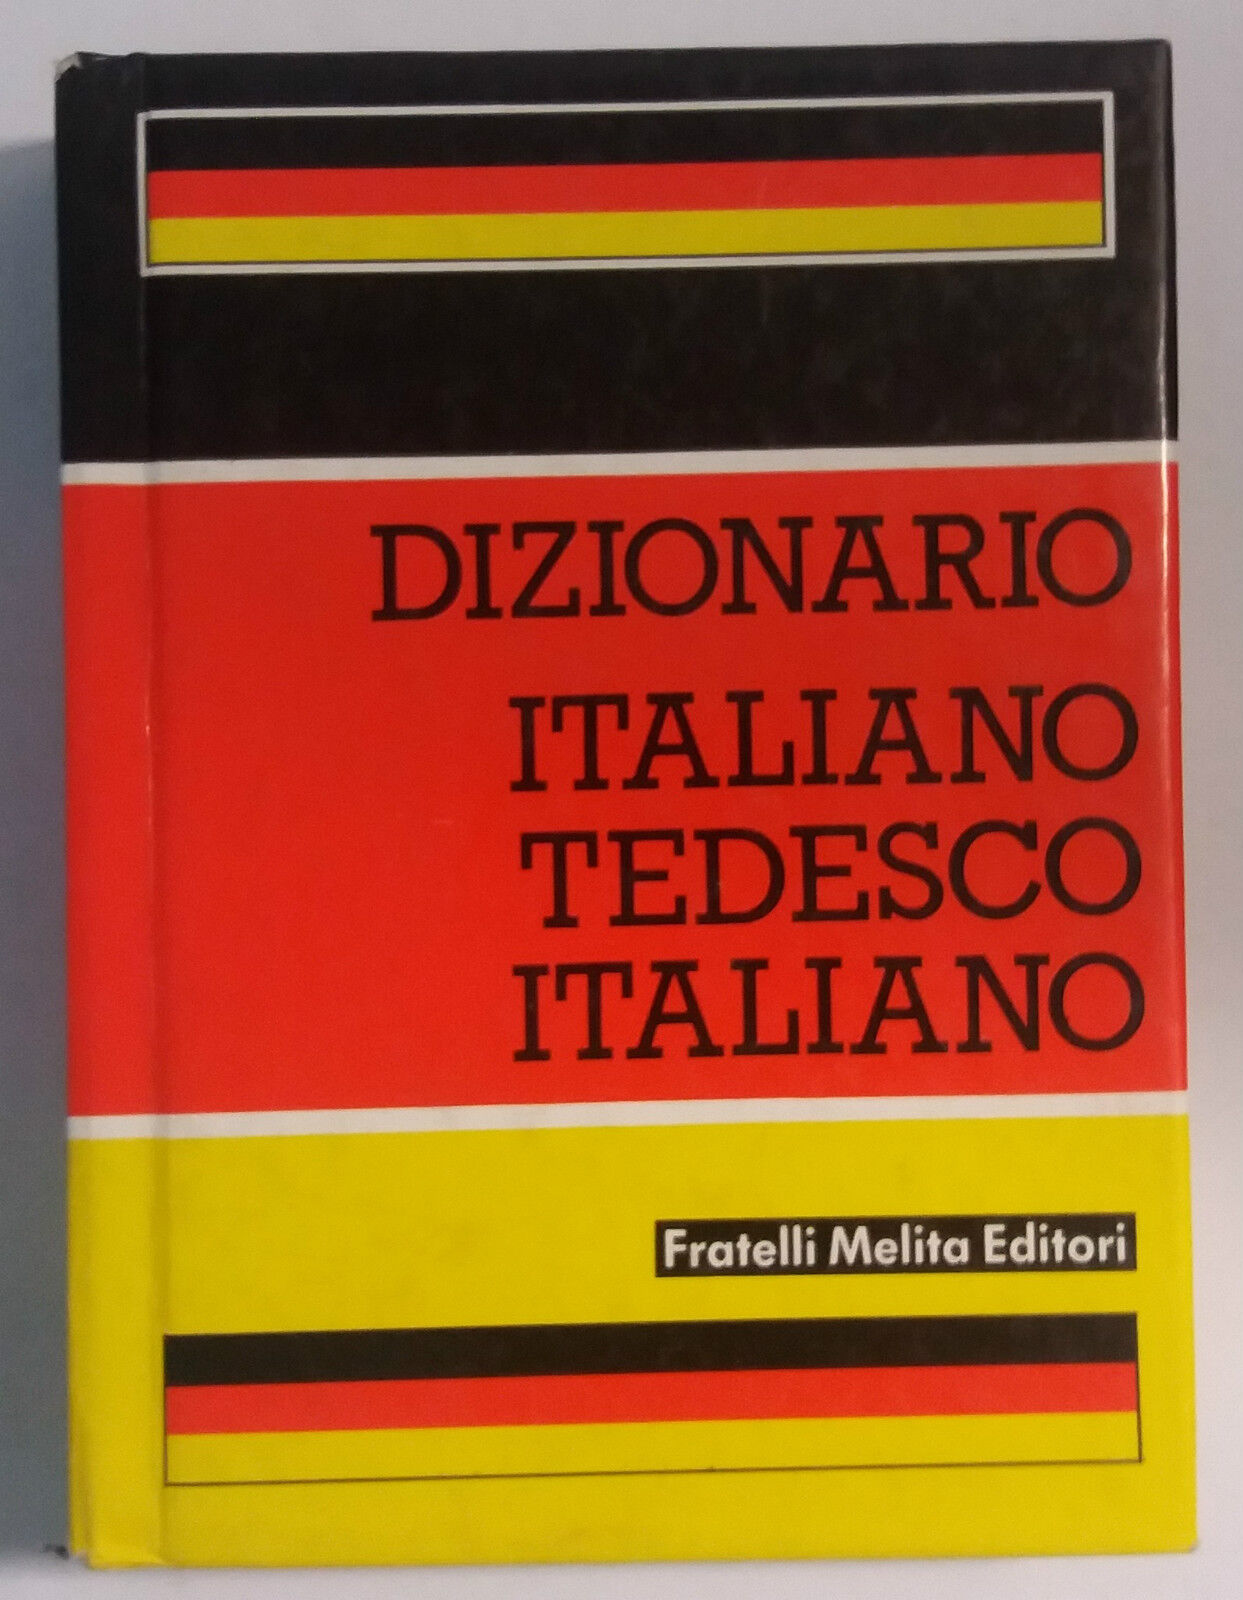 Dizionario Italiano-Tedesco-Italiano - Fratelli Melita Editori - 1988 - G